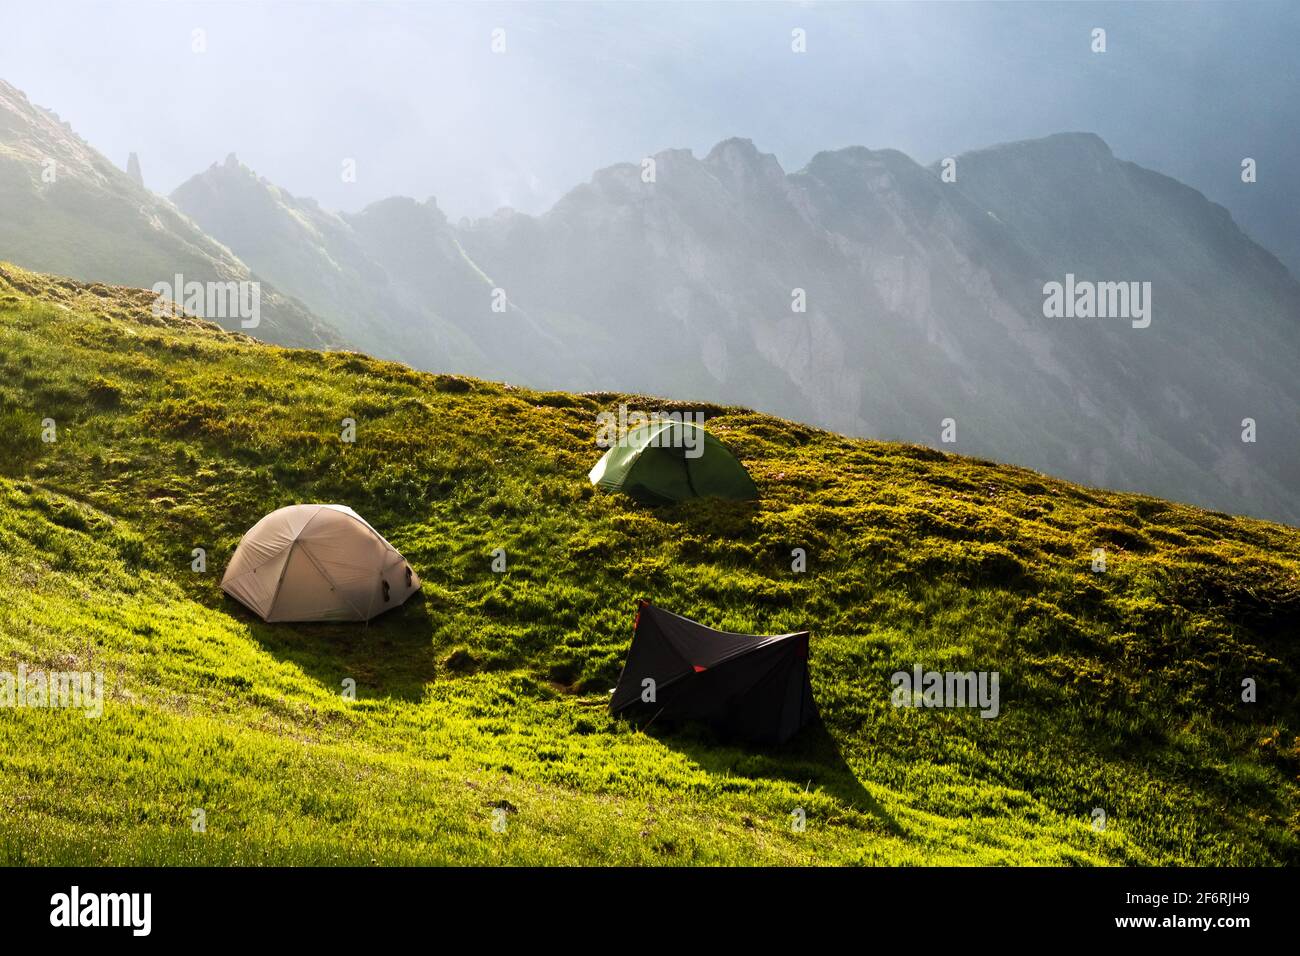 Tre tende turisti accampano su un prato incredibile in montagna primavera. Fotografia di paesaggi, concetto di viaggio Foto Stock